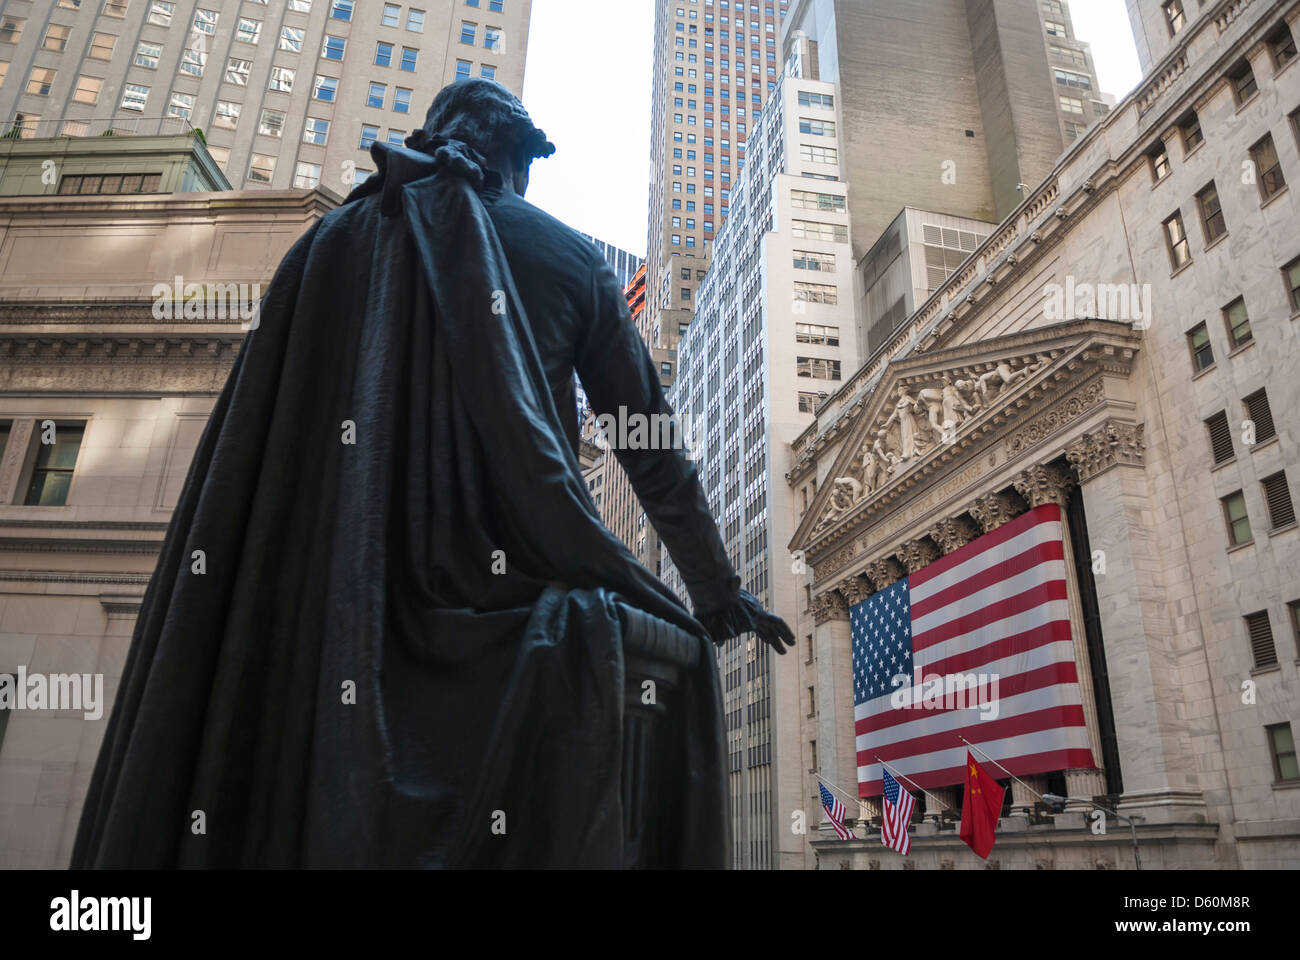 George-Washington-Denkmal gegenüber New York Stock Exchange, Wall Street, NYC, USA - Bild von öffentlichem Grund Stockfoto